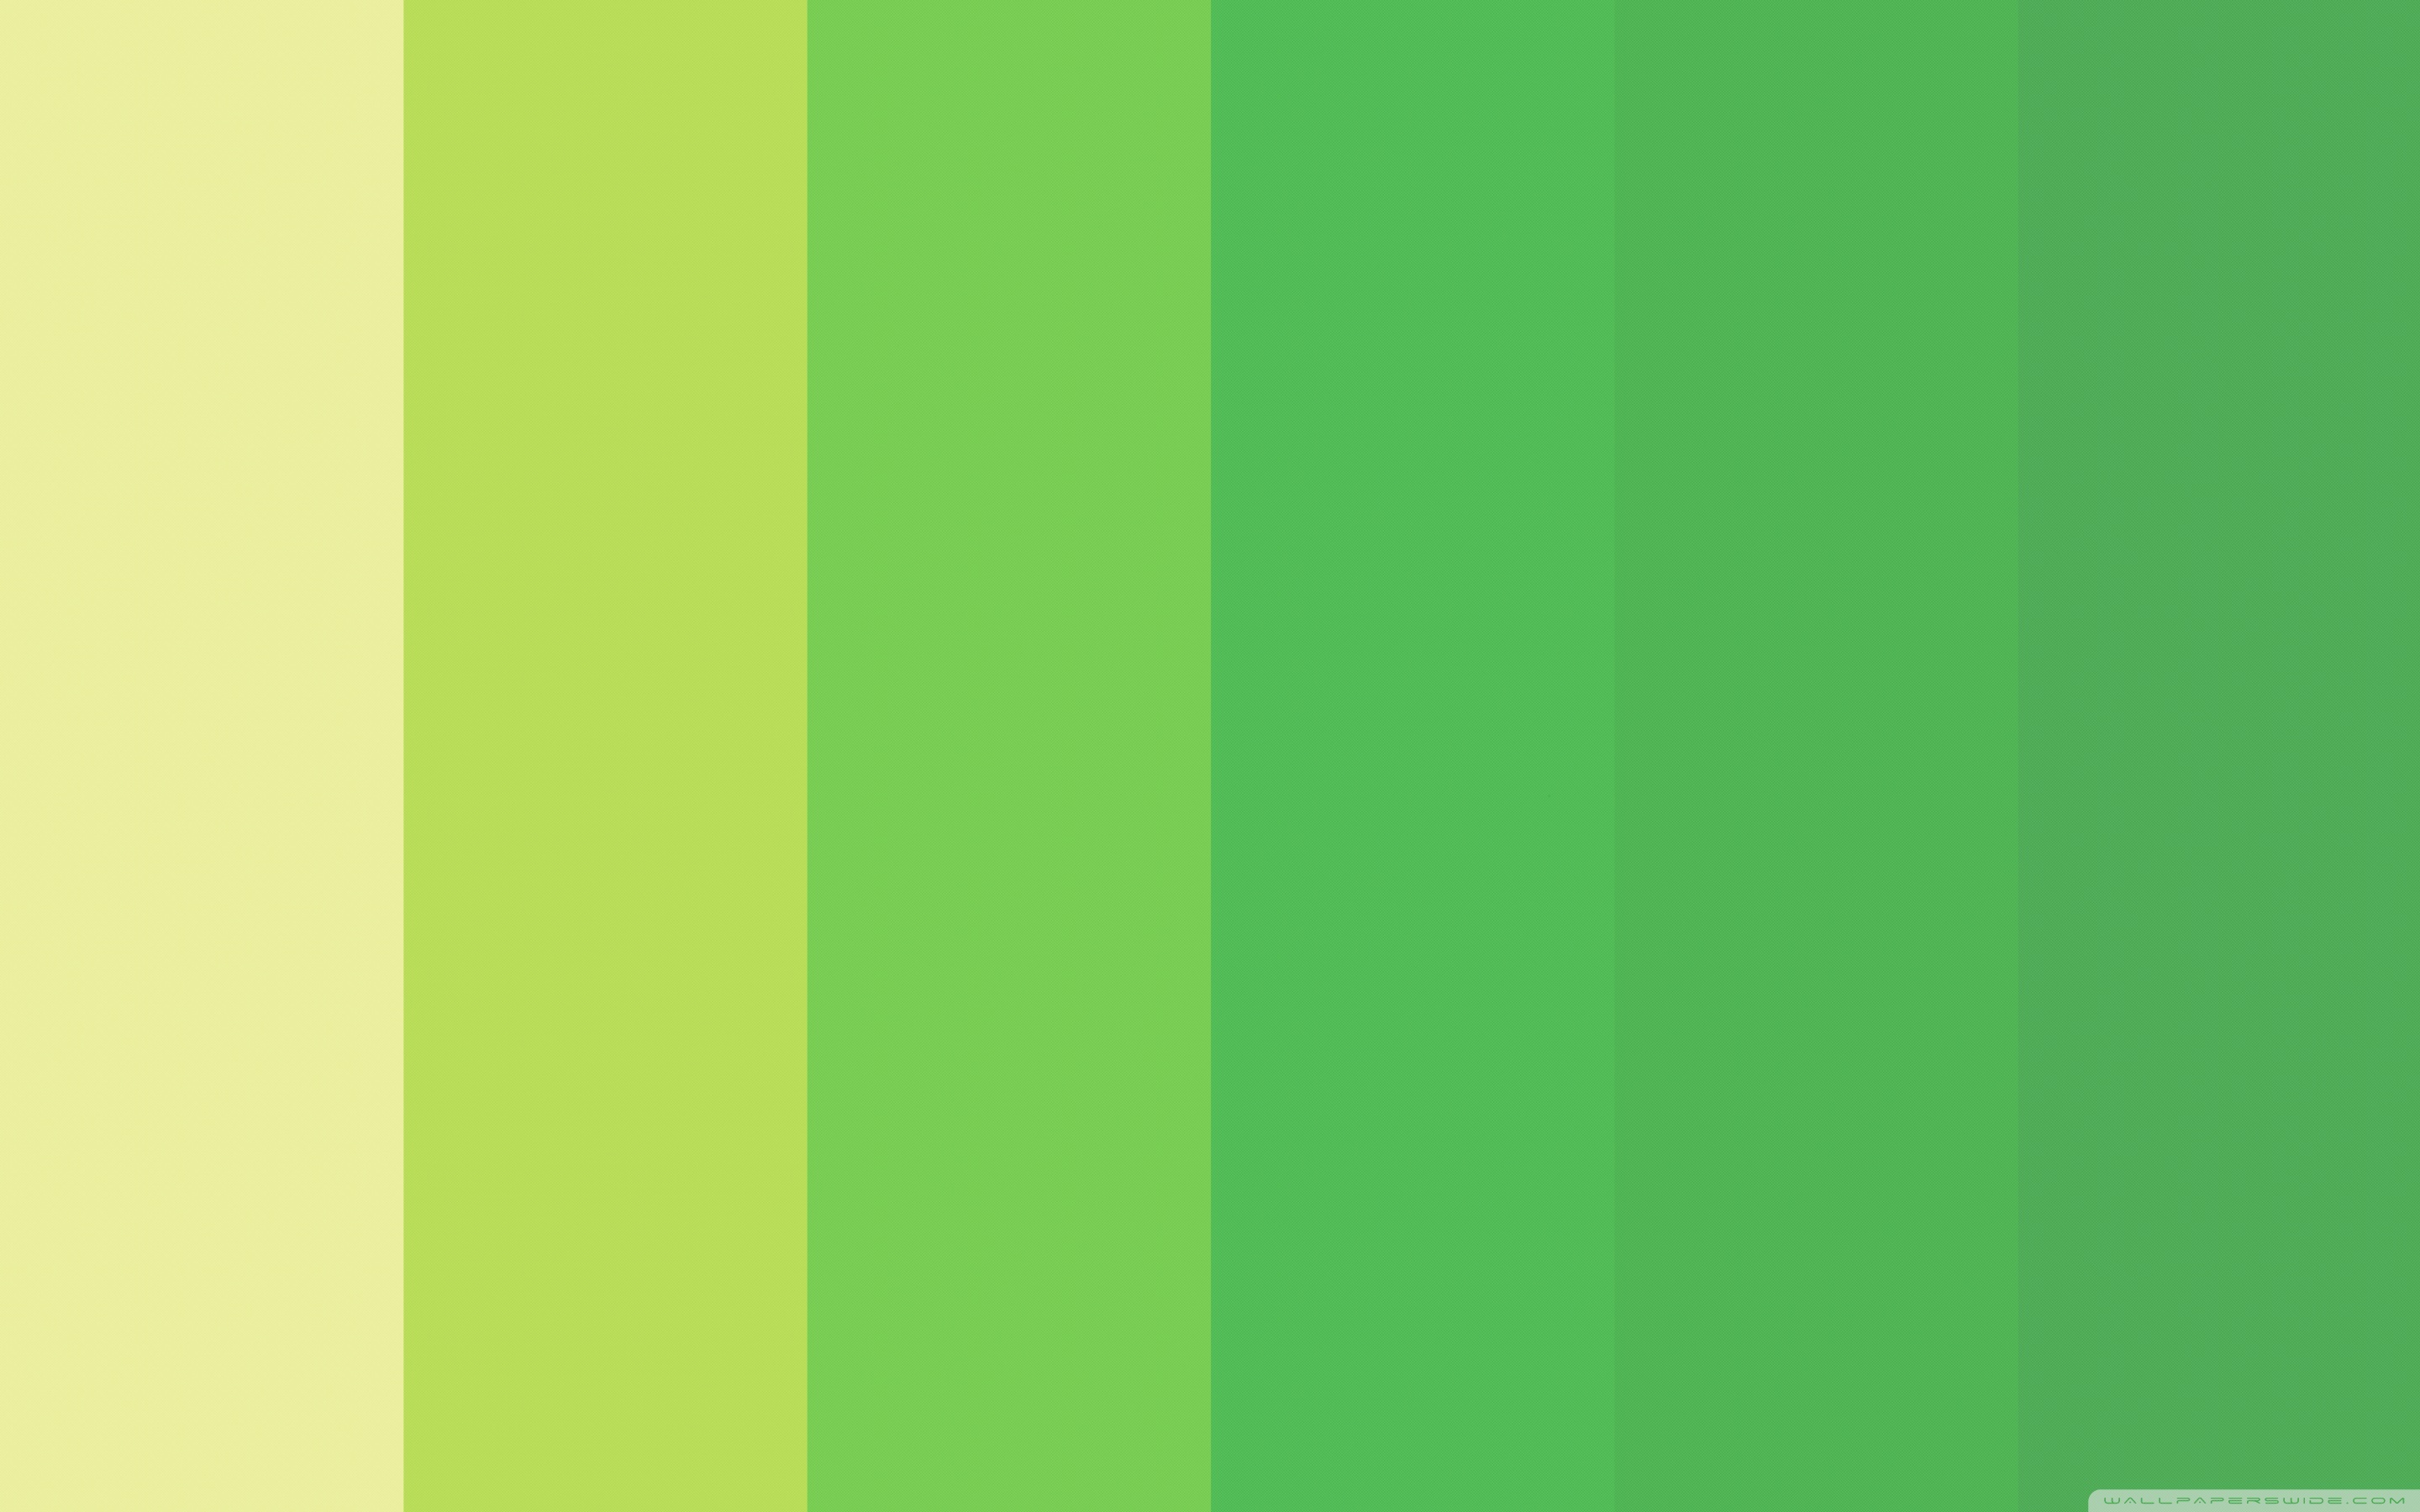 К оттенкам зеленого цвета относится. Color 02-256 цвет Оазис. Color Oasis #f2dcb3. Софт Грин 17090. Палитра зеленых оттенков.